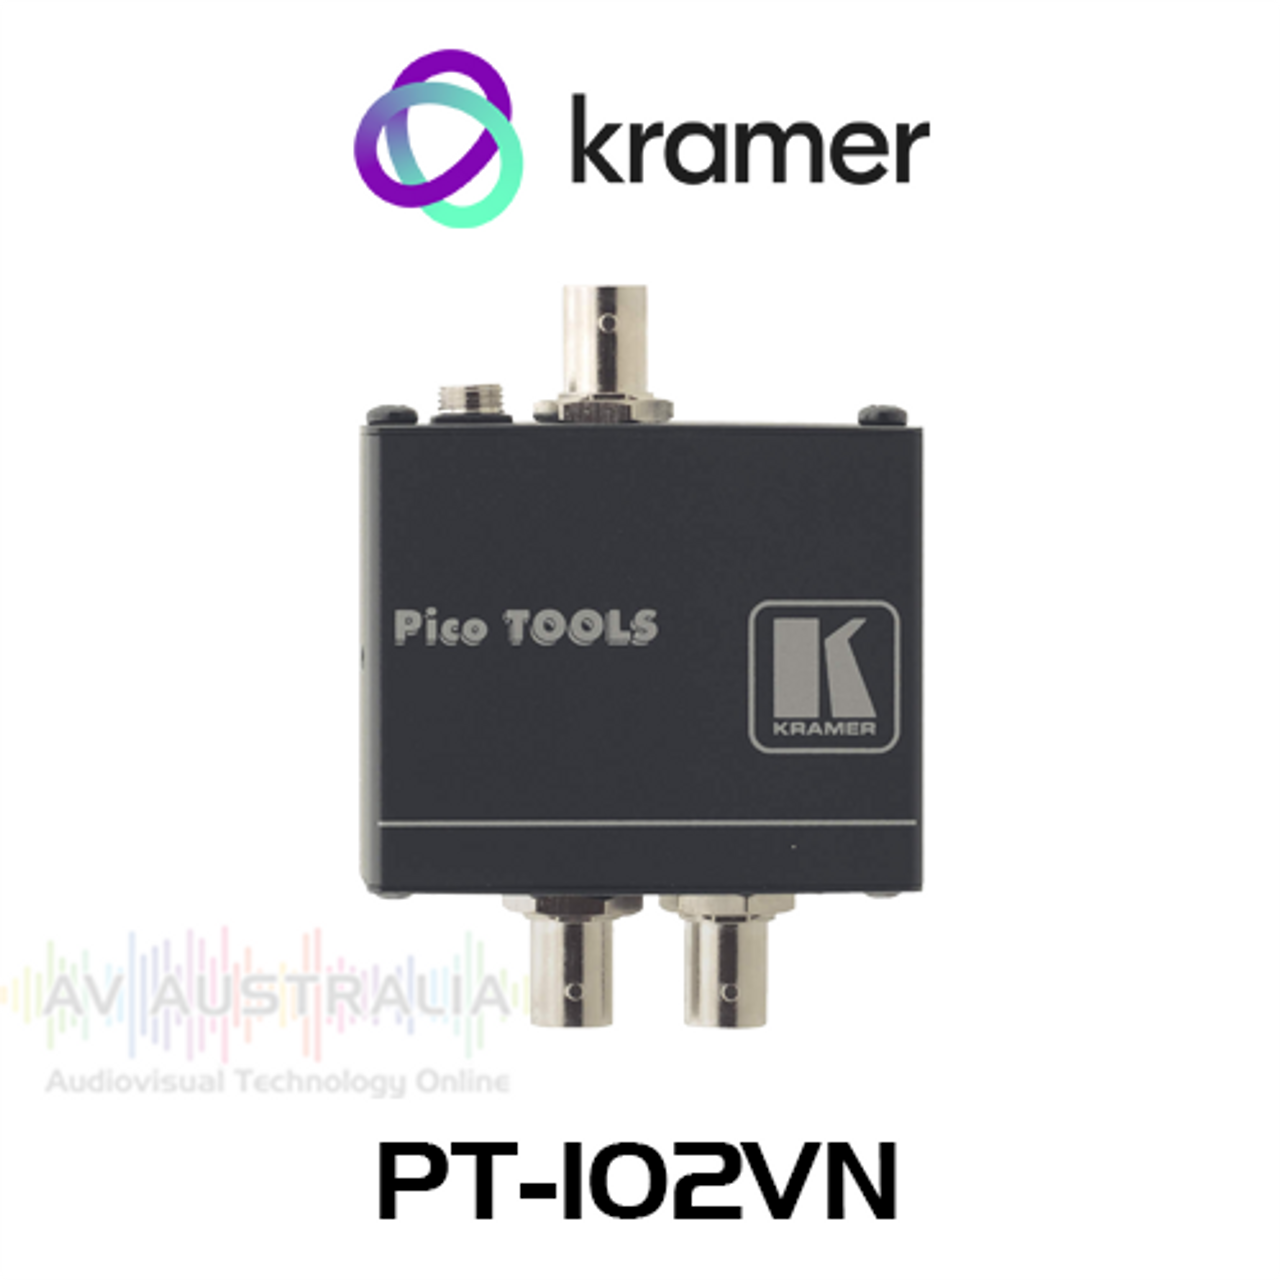 Kramer PT-102VN 1:2 Composite Video Distribution Amplifier